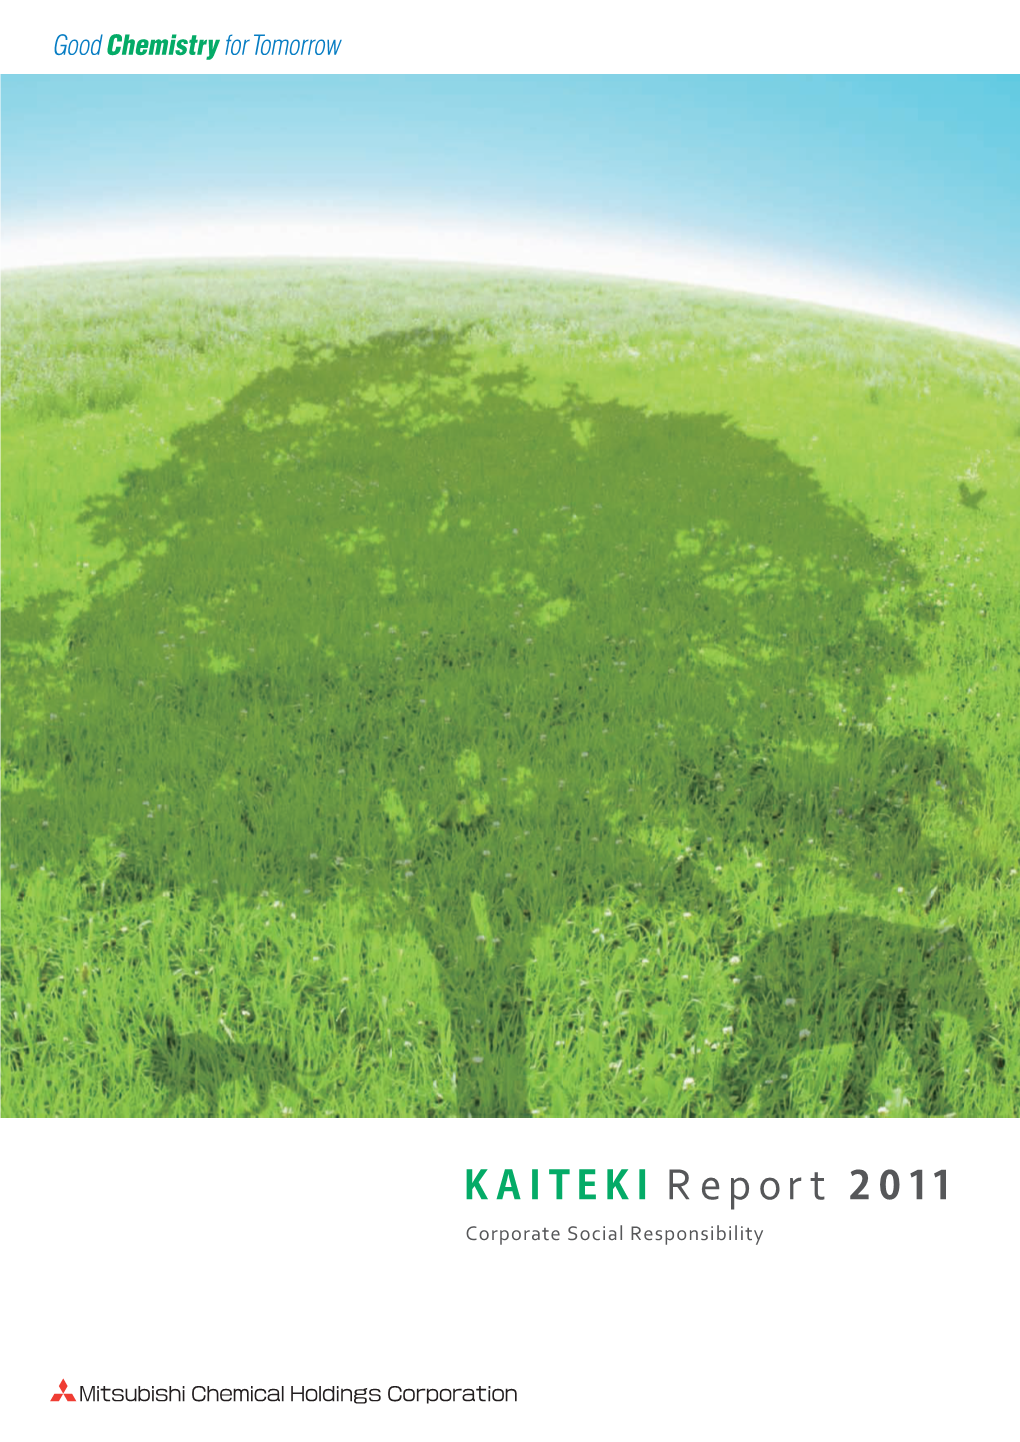 KAITEKI Report 2011